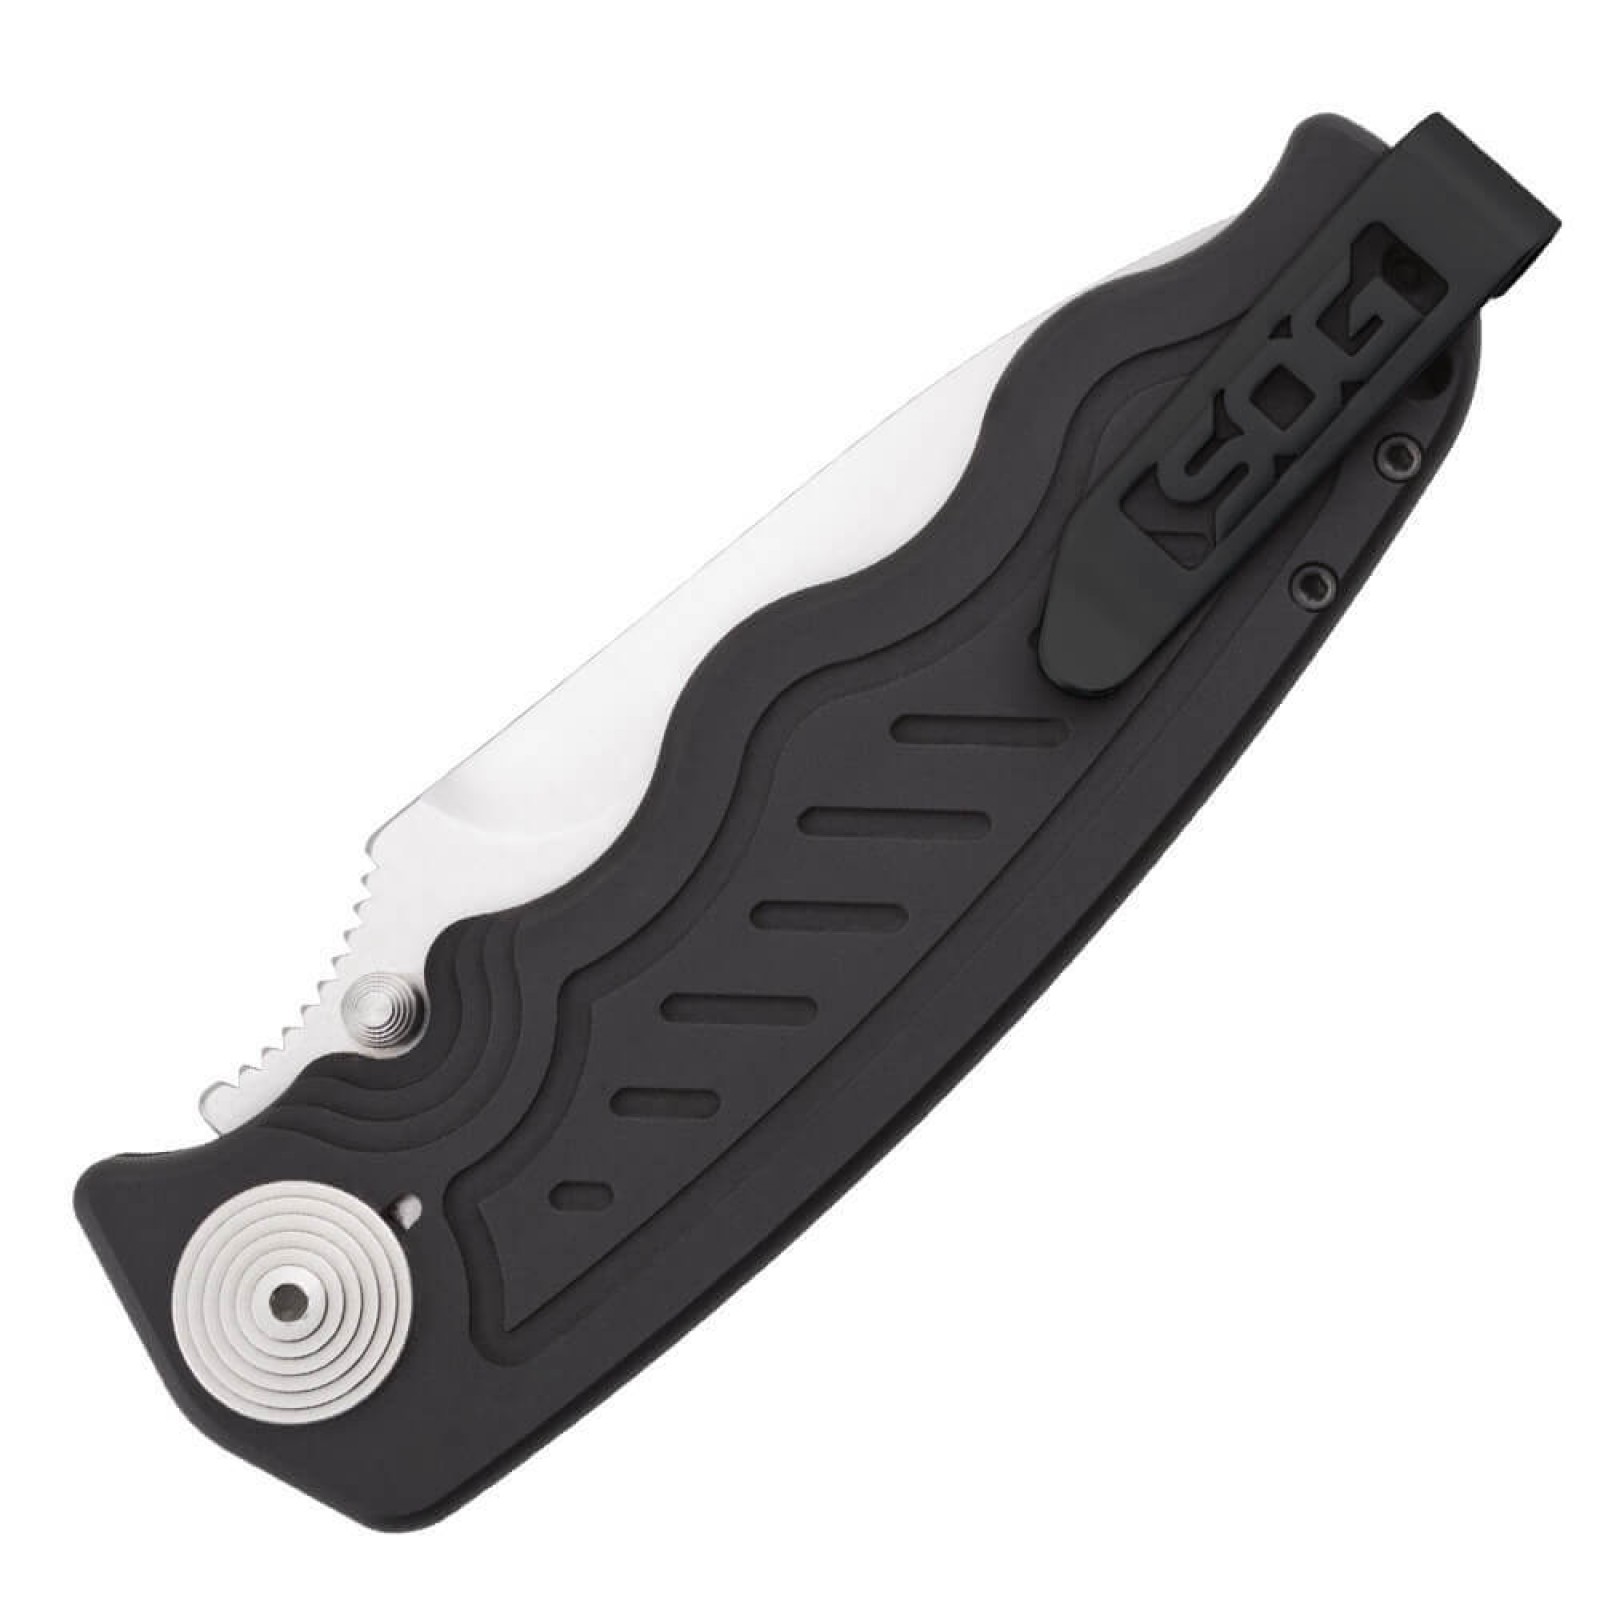 Складной нож Zoom - SOG ZM1011, сталь лезвия AUS-8 Satin Polished, рукоять алюминий, чёрный - фото 9